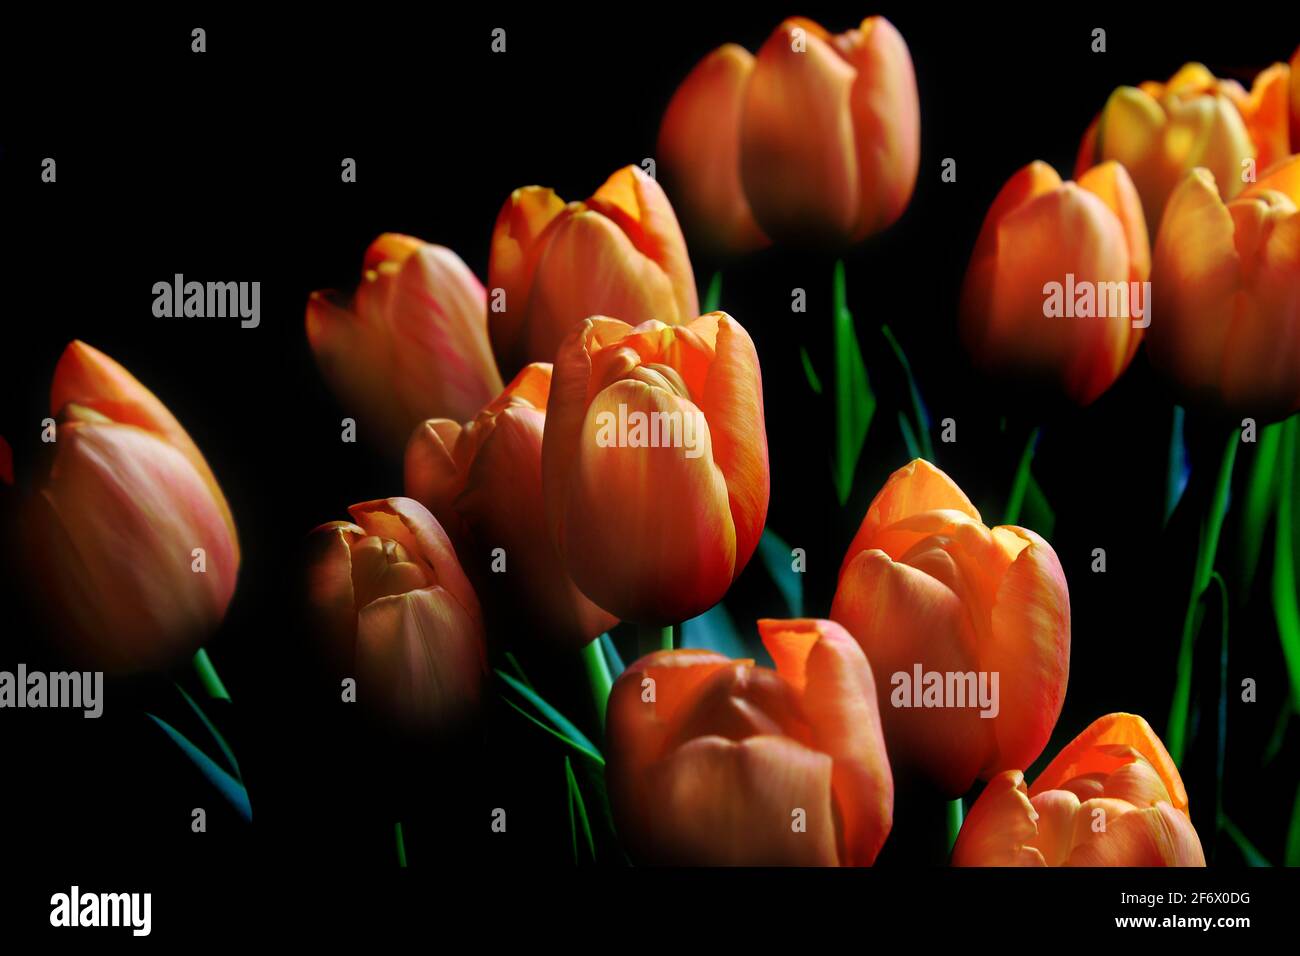 Un bouquet de belles tulipes orange fleurit, éclairé sur le côté, sur fond sombre. Ancienne influence principale. Banque D'Images